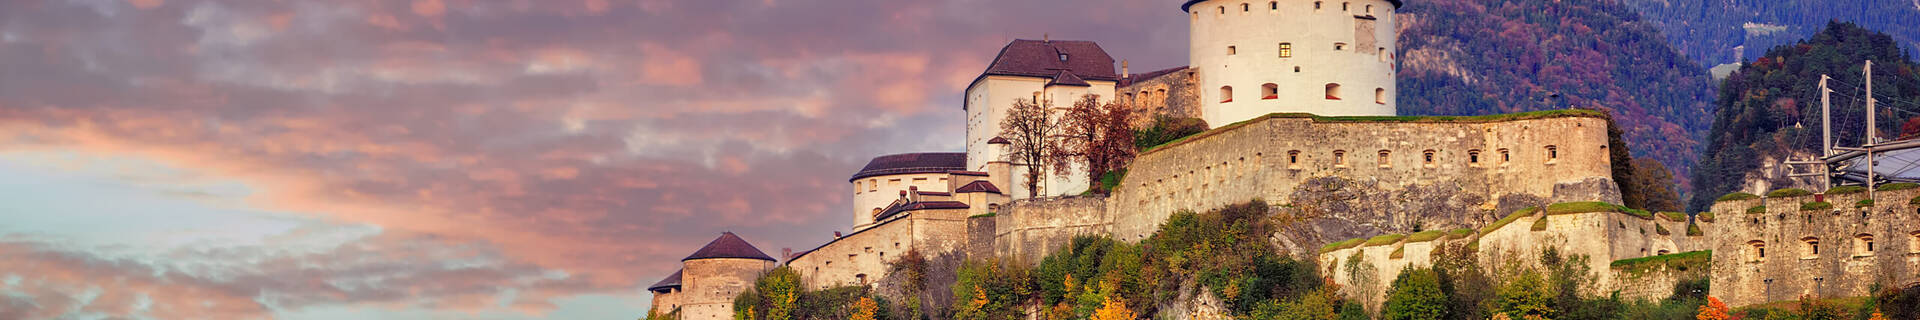 Blick auf die Festung in Kufstein